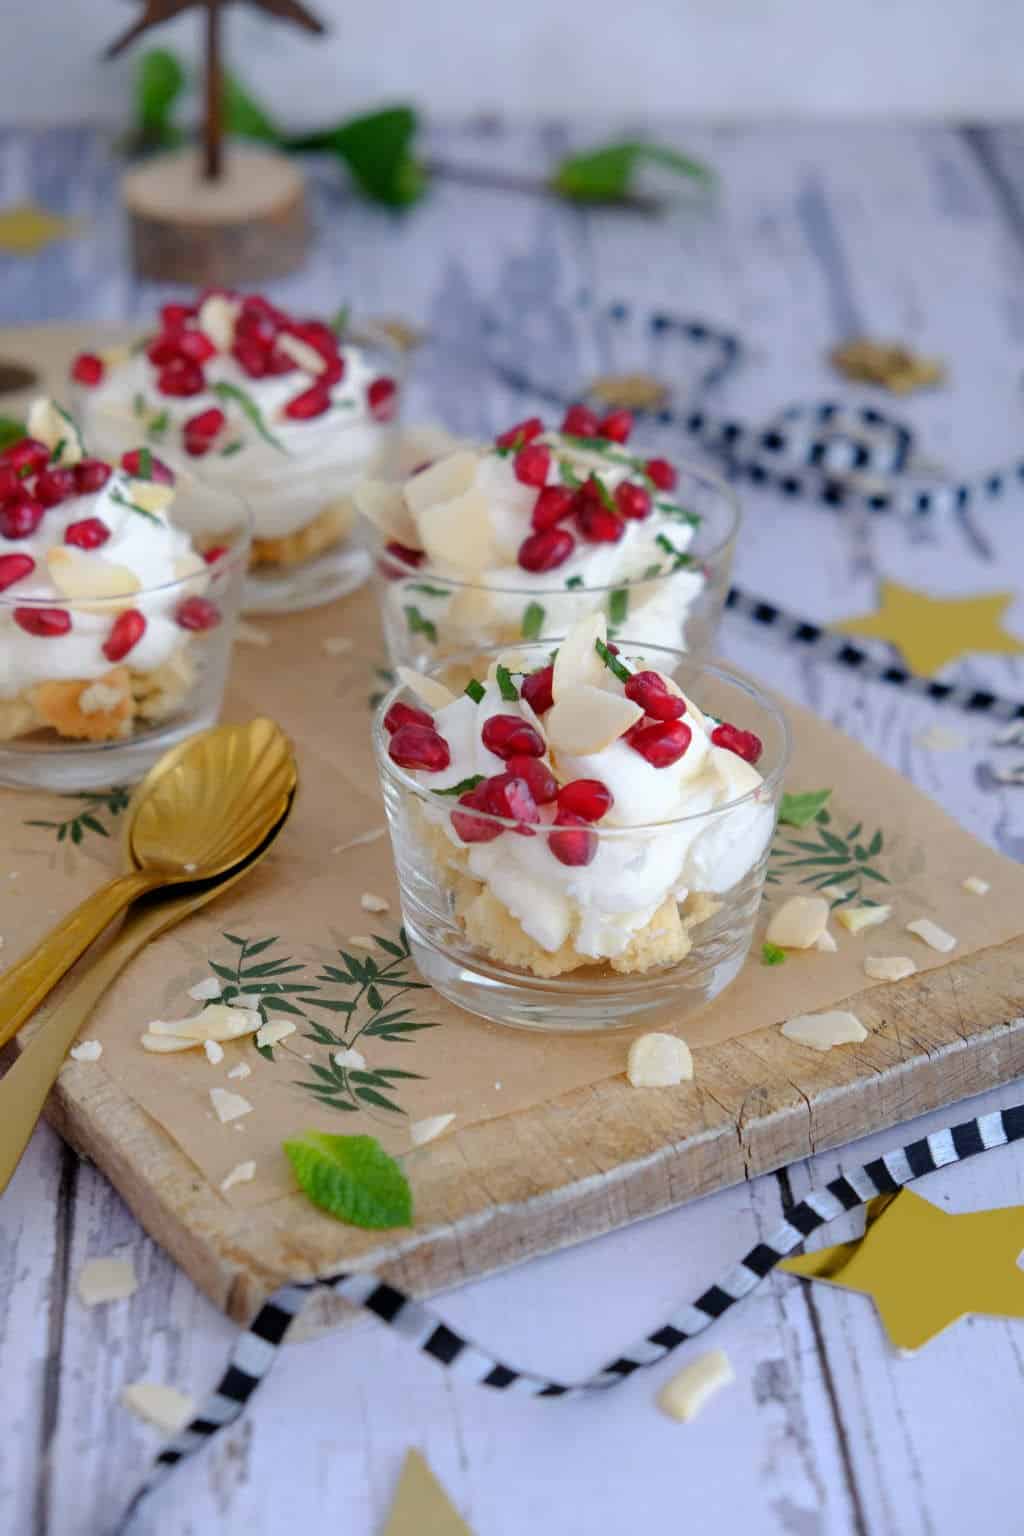 Italiaanse hangop maak je met volle yoghurt en ricotta. Dit toetje bereid je makkelijk voor tijdens kerst of diner. Lekkker met koek, munt en granaatappel.